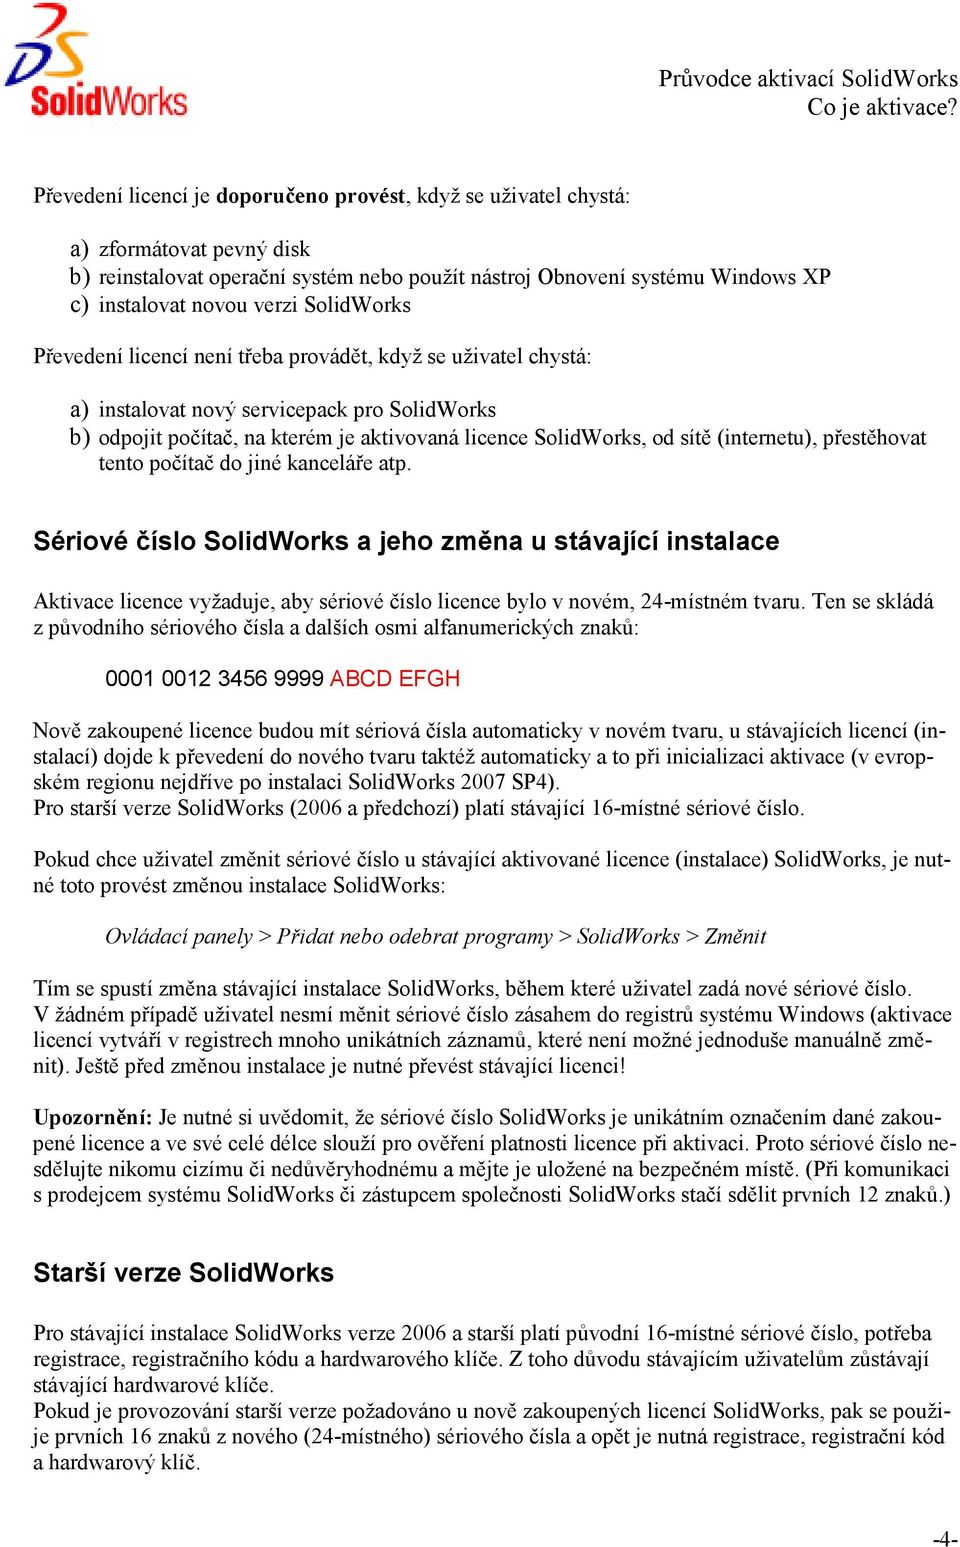 SolidWorks Převedení licencí není třeba provádět, když se uživatel chystá: a) instalovat nový servicepack pro SolidWorks b) odpojit počítač, na kterém je aktivovaná licence SolidWorks, od sítě